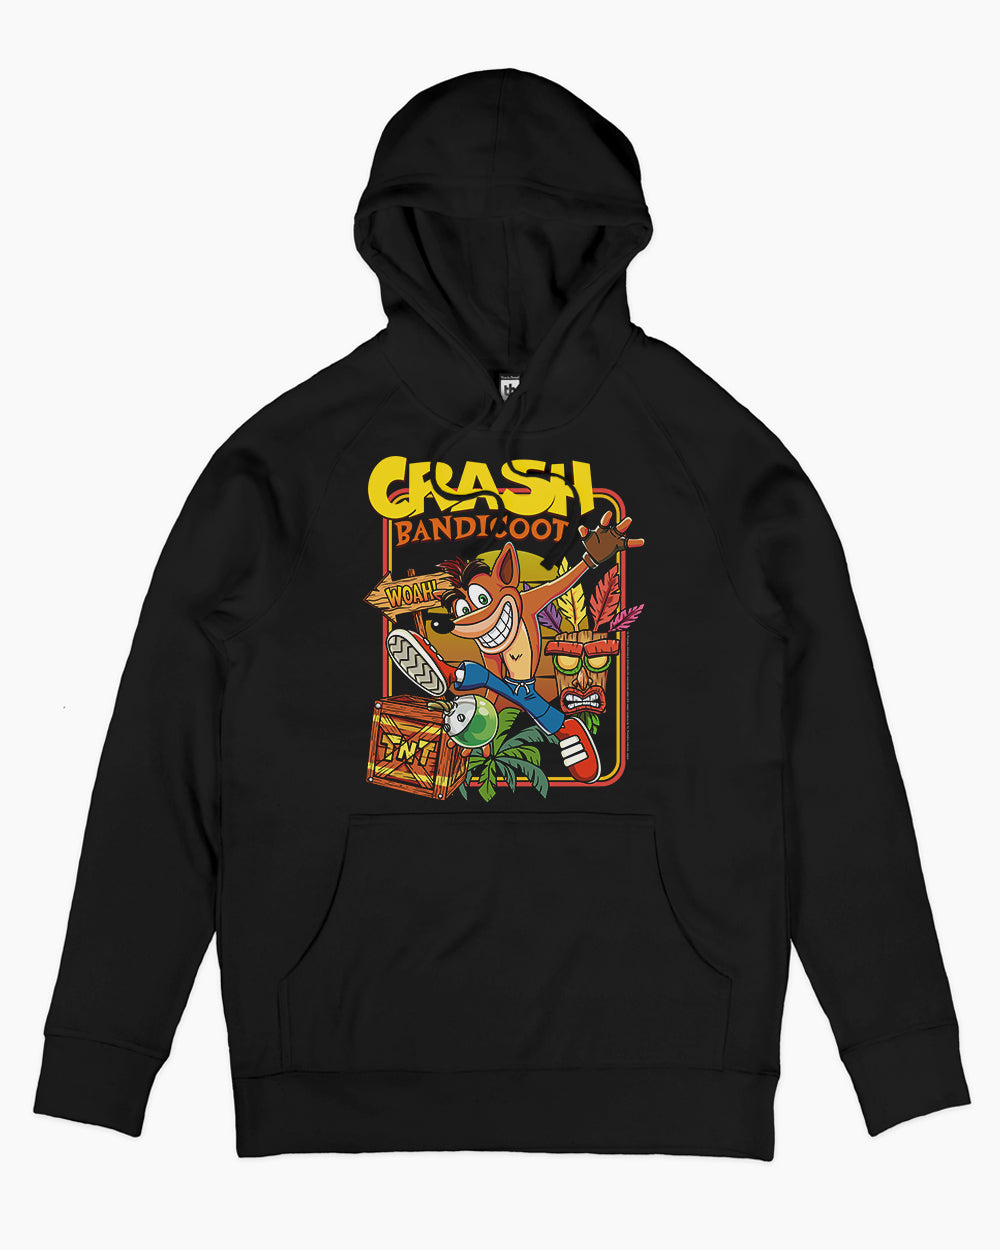 Whoa Crash! Hoodie